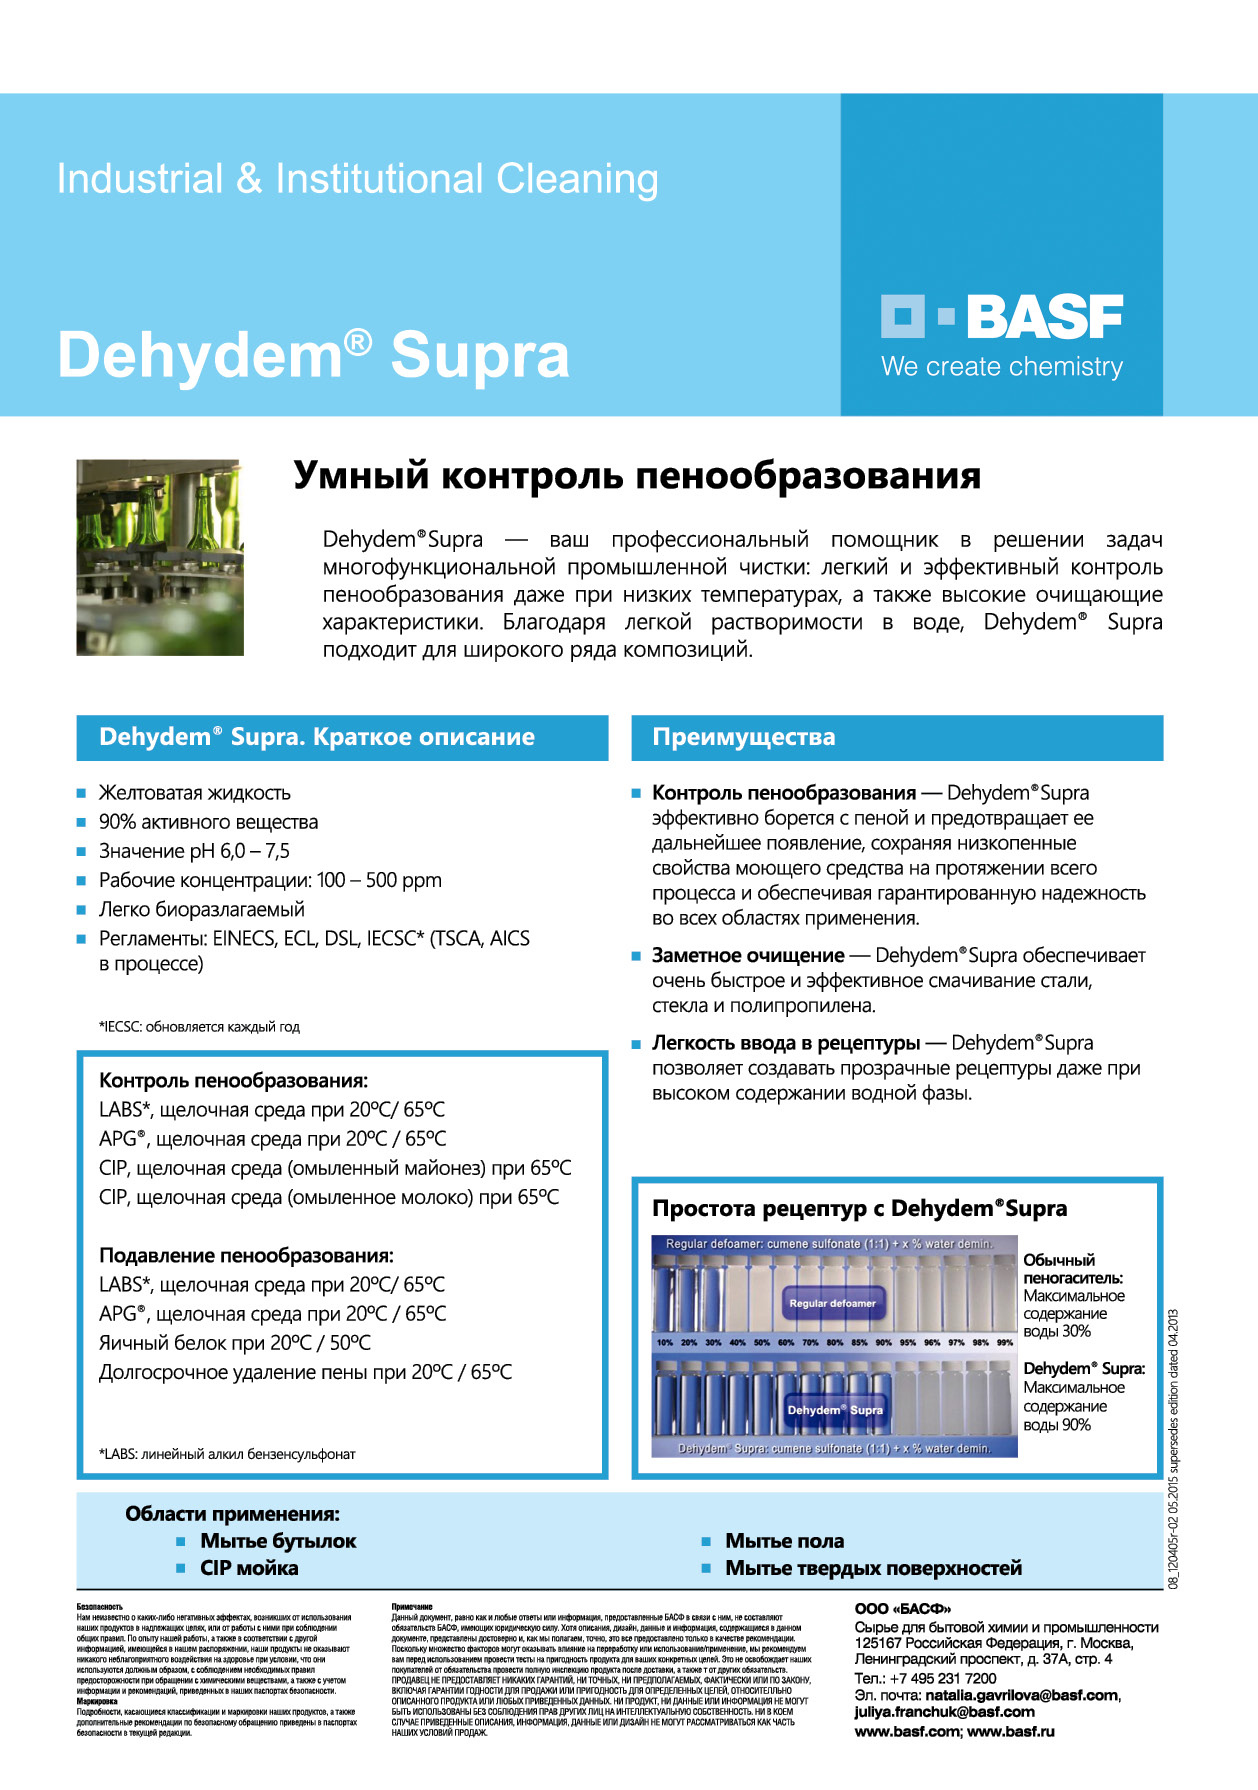 Компания BASF